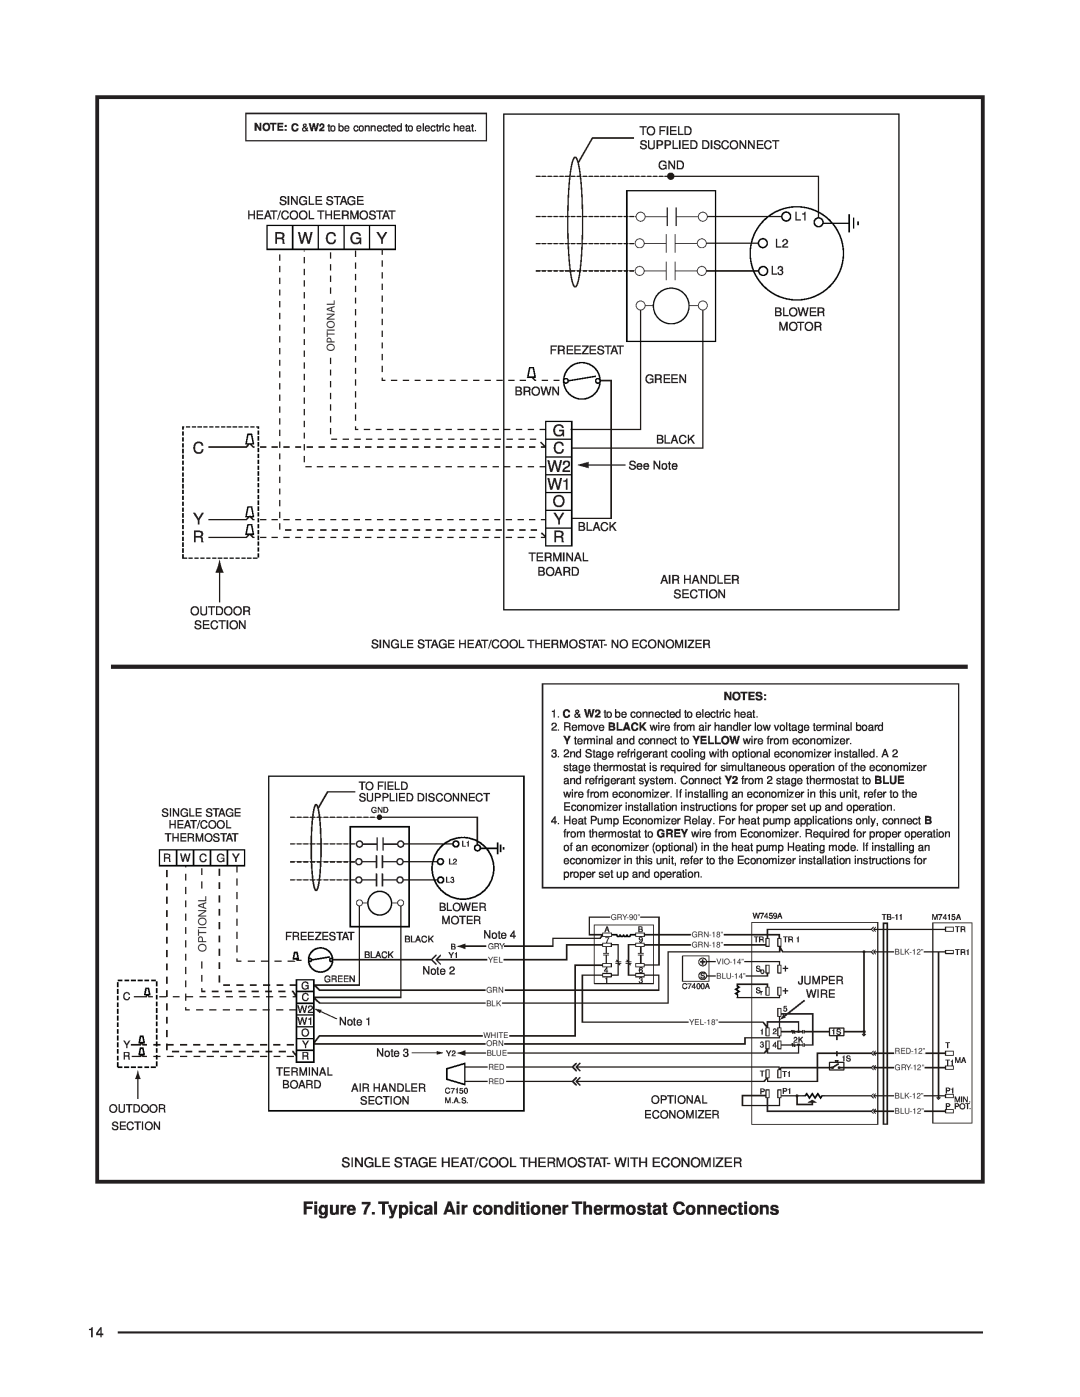 Nordyne B5SM -090 installation instructions R W C G Y, C Y R, Optional 